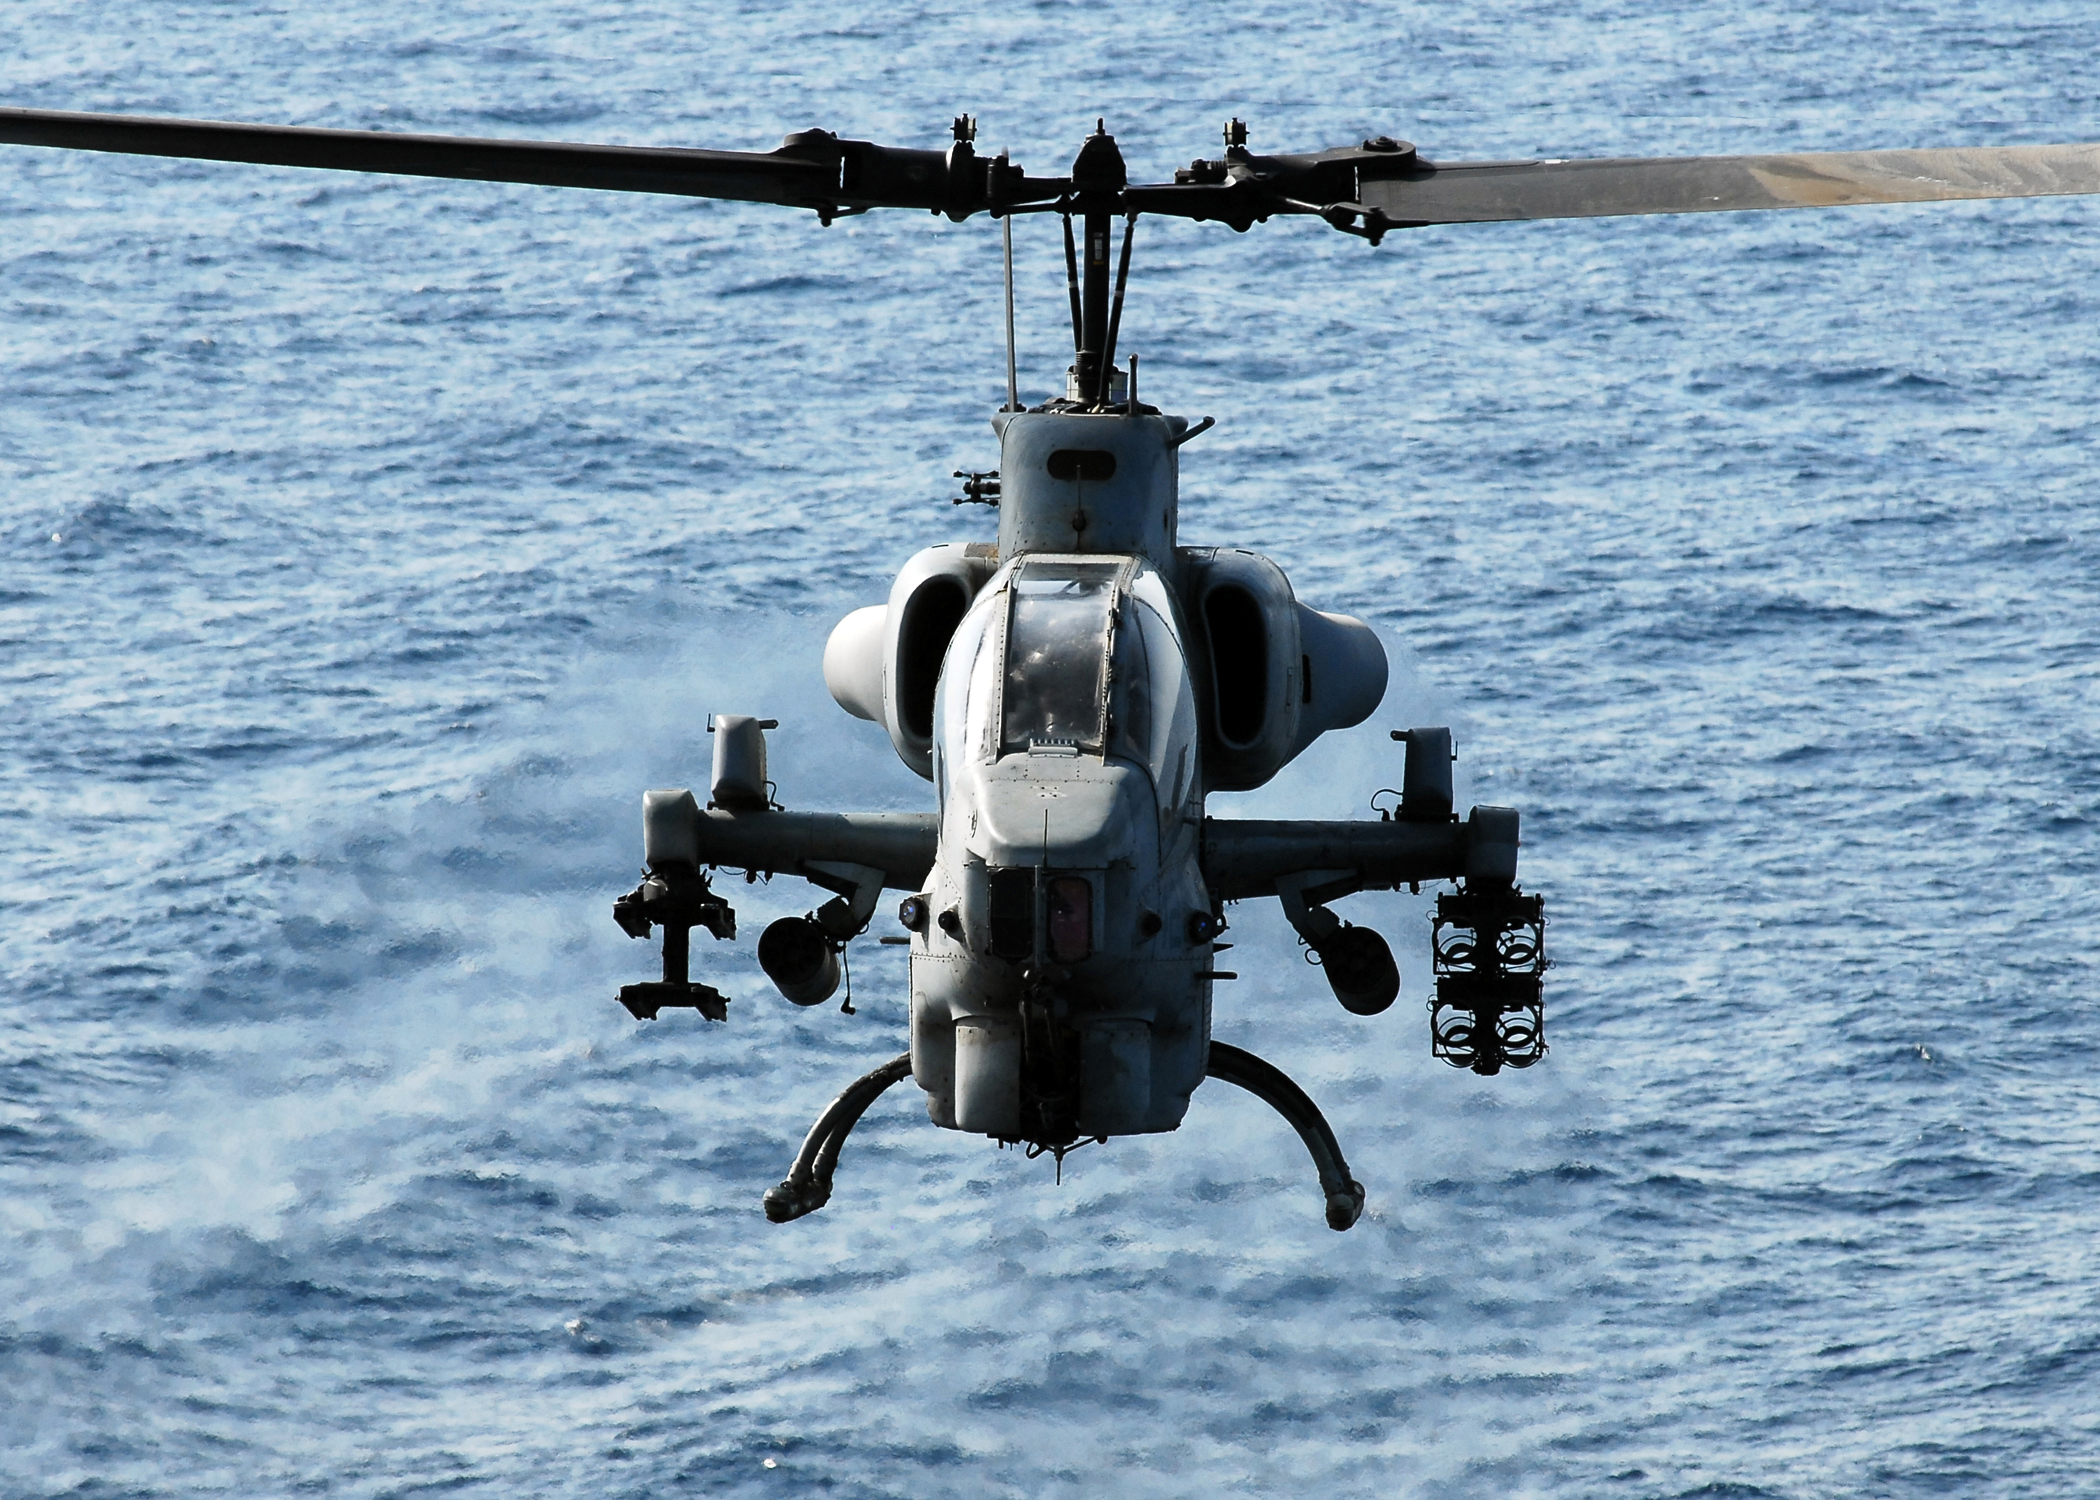 Description Us Navy N 2183k An Ah 1w Super Cobra Helicopter